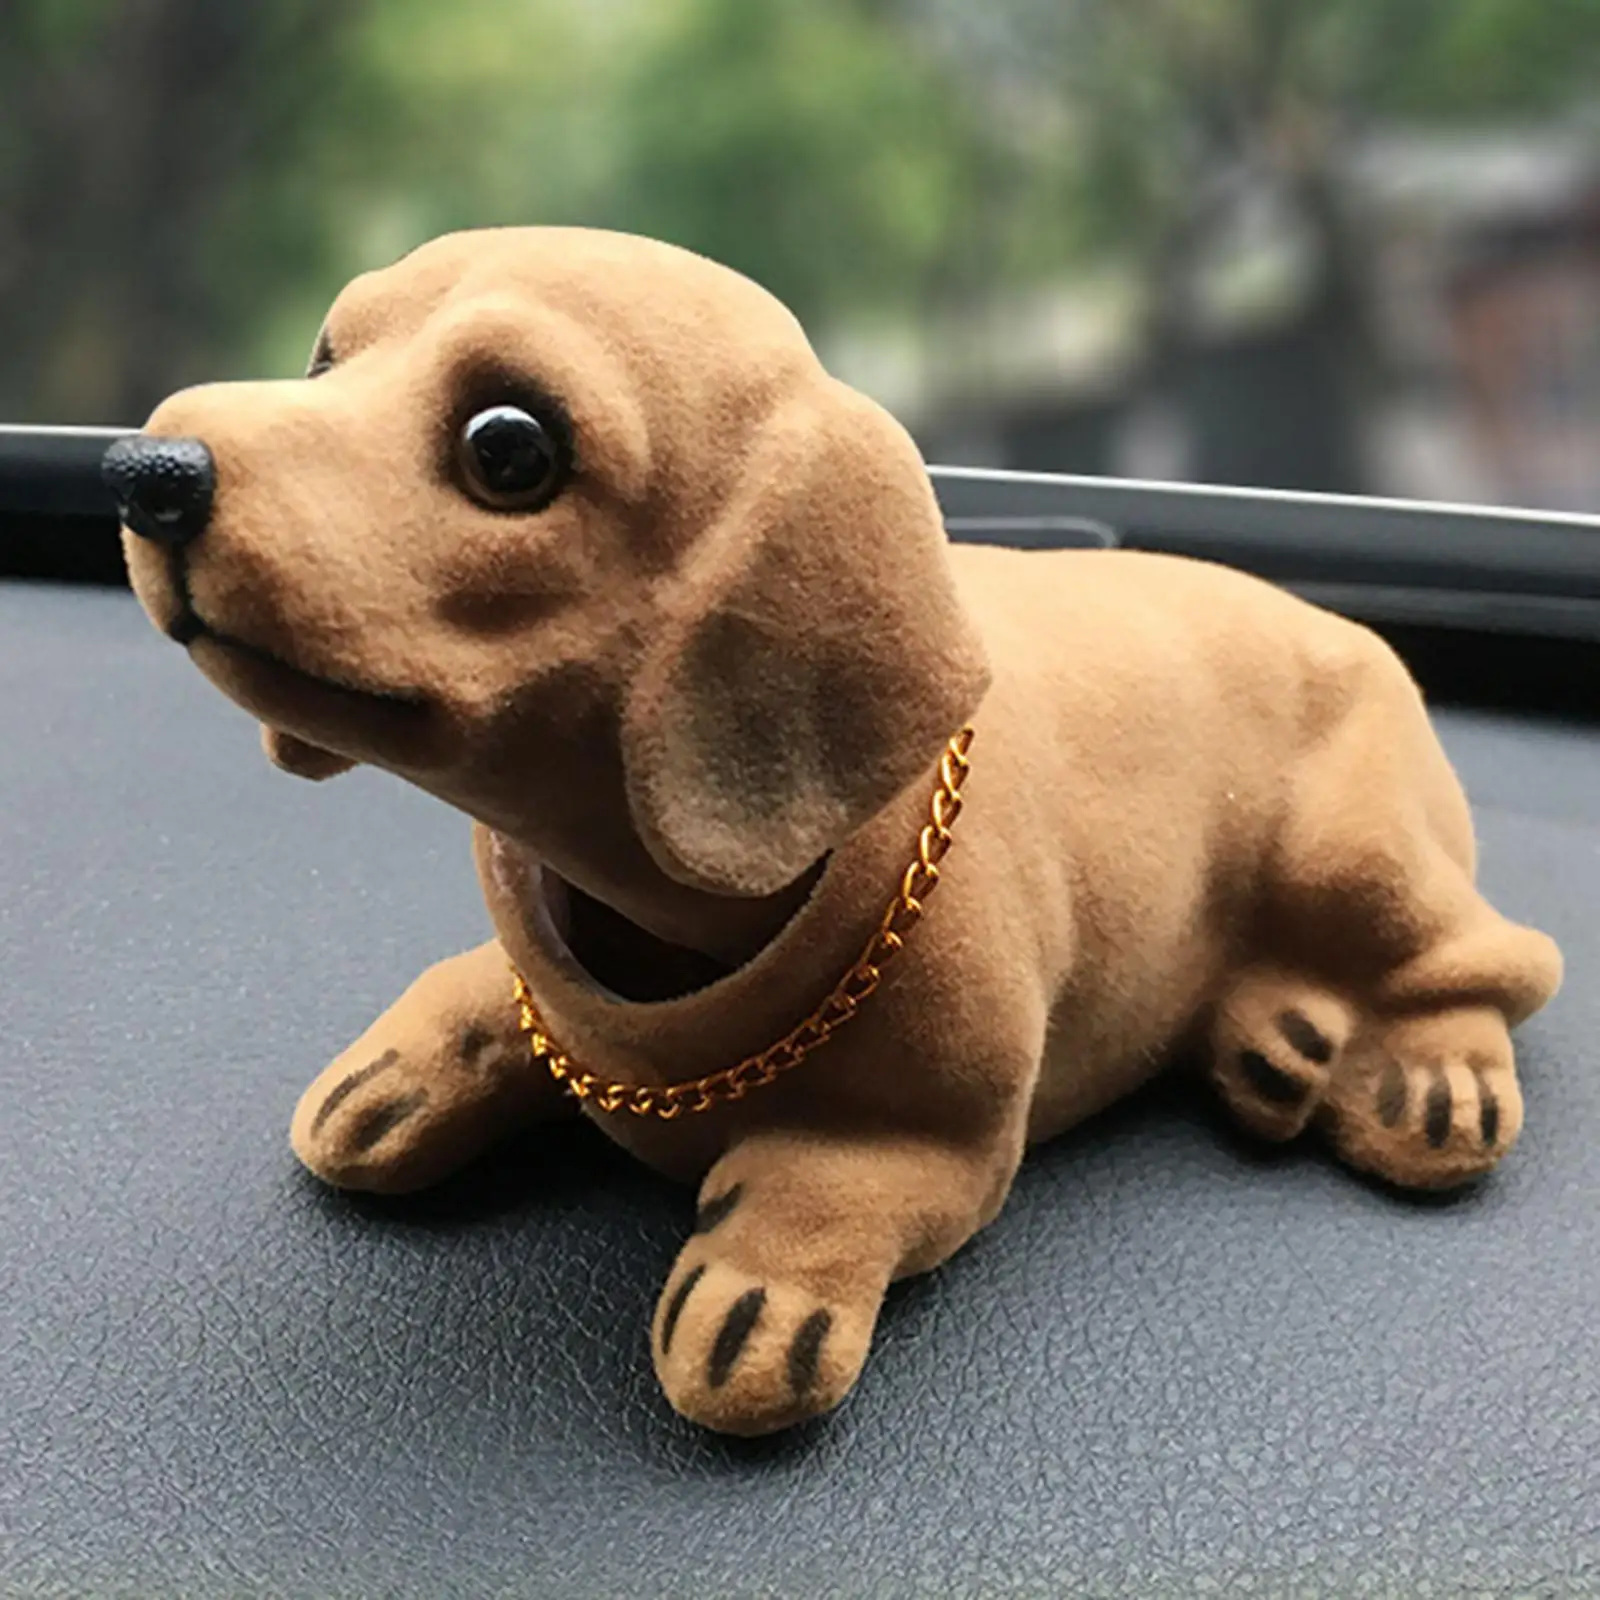 Dhqkqg Car Decoration Dog, Autodekoration Hund, Hundepuppe